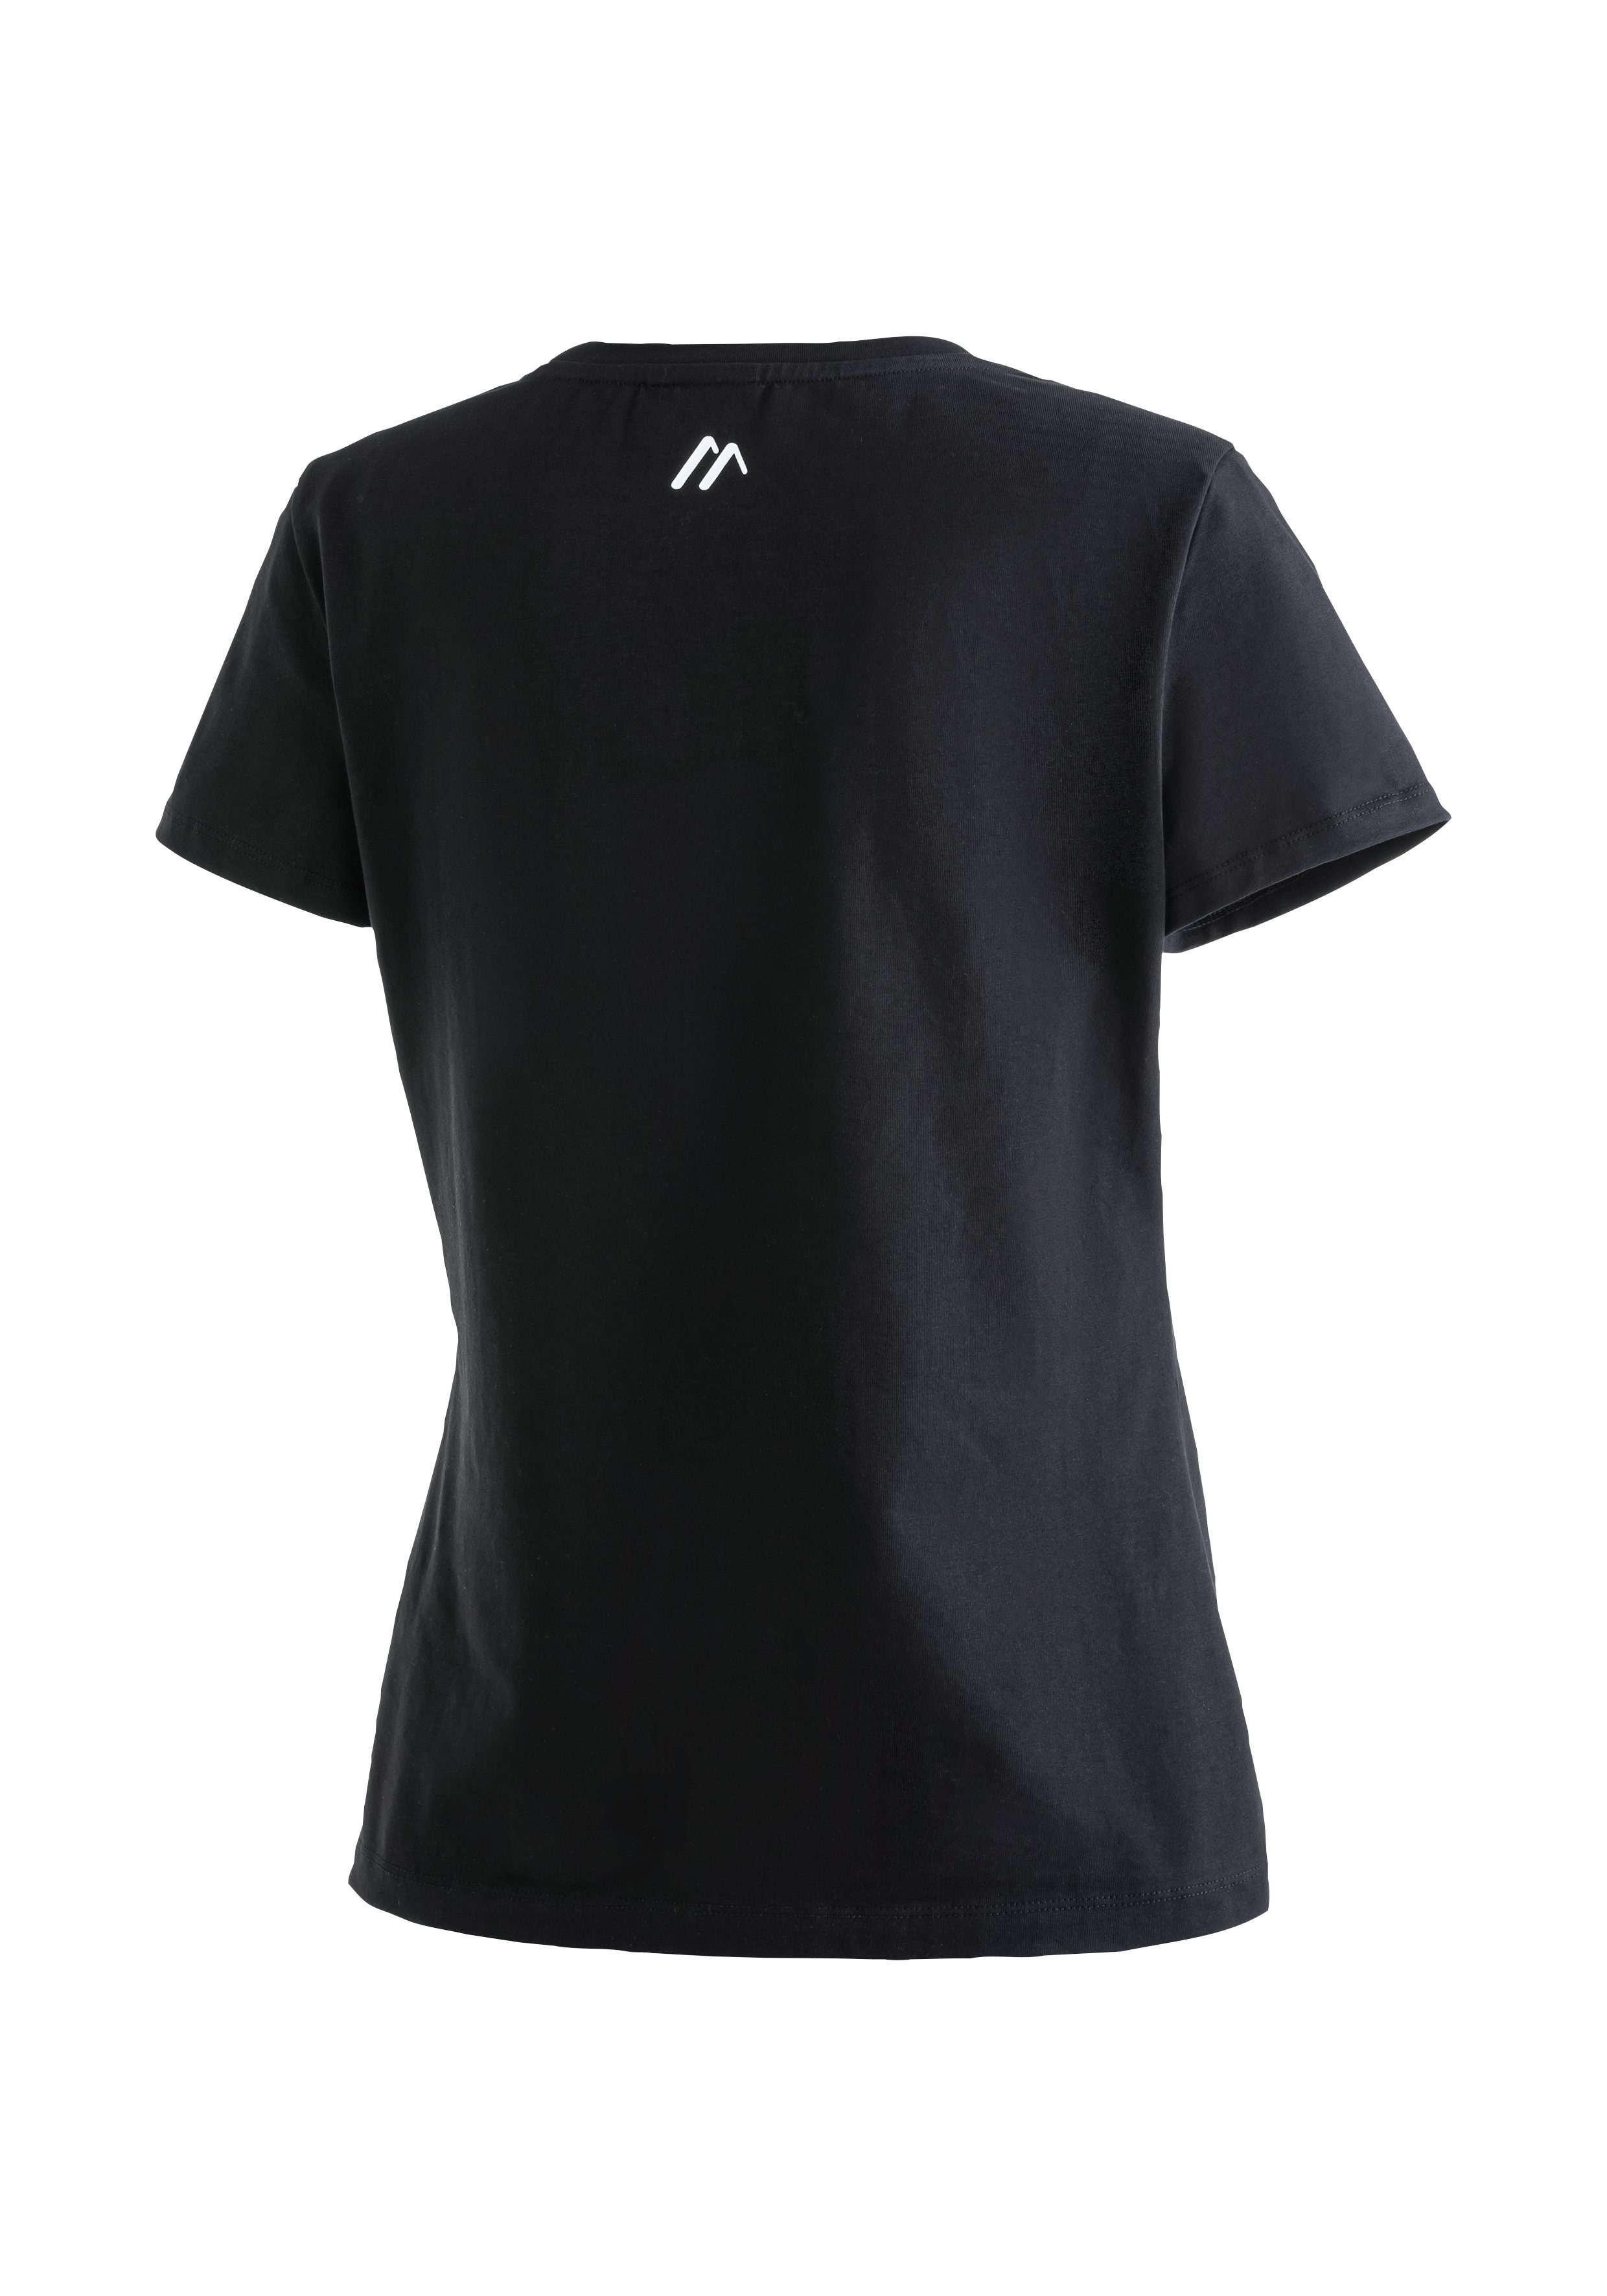 MS schwarz Tee Rundhalsshirt Material Vielseitiges elastischem W Funktionsshirt Maier aus Sports